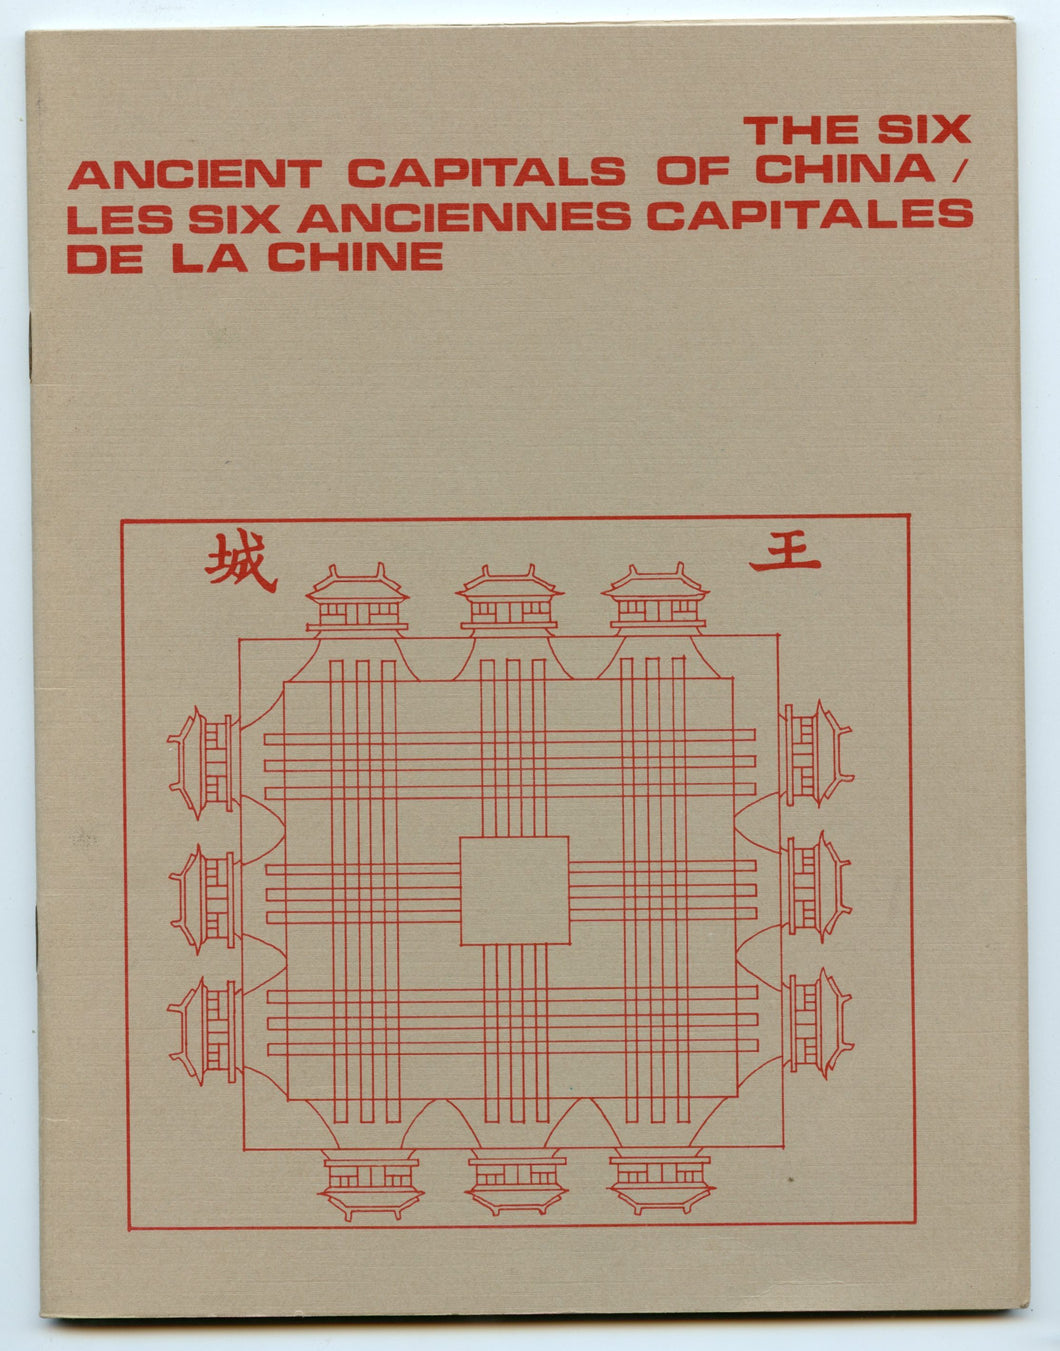 The Six Ancient Capitals of China; Les Sic Anciennes Capitales de la Chine